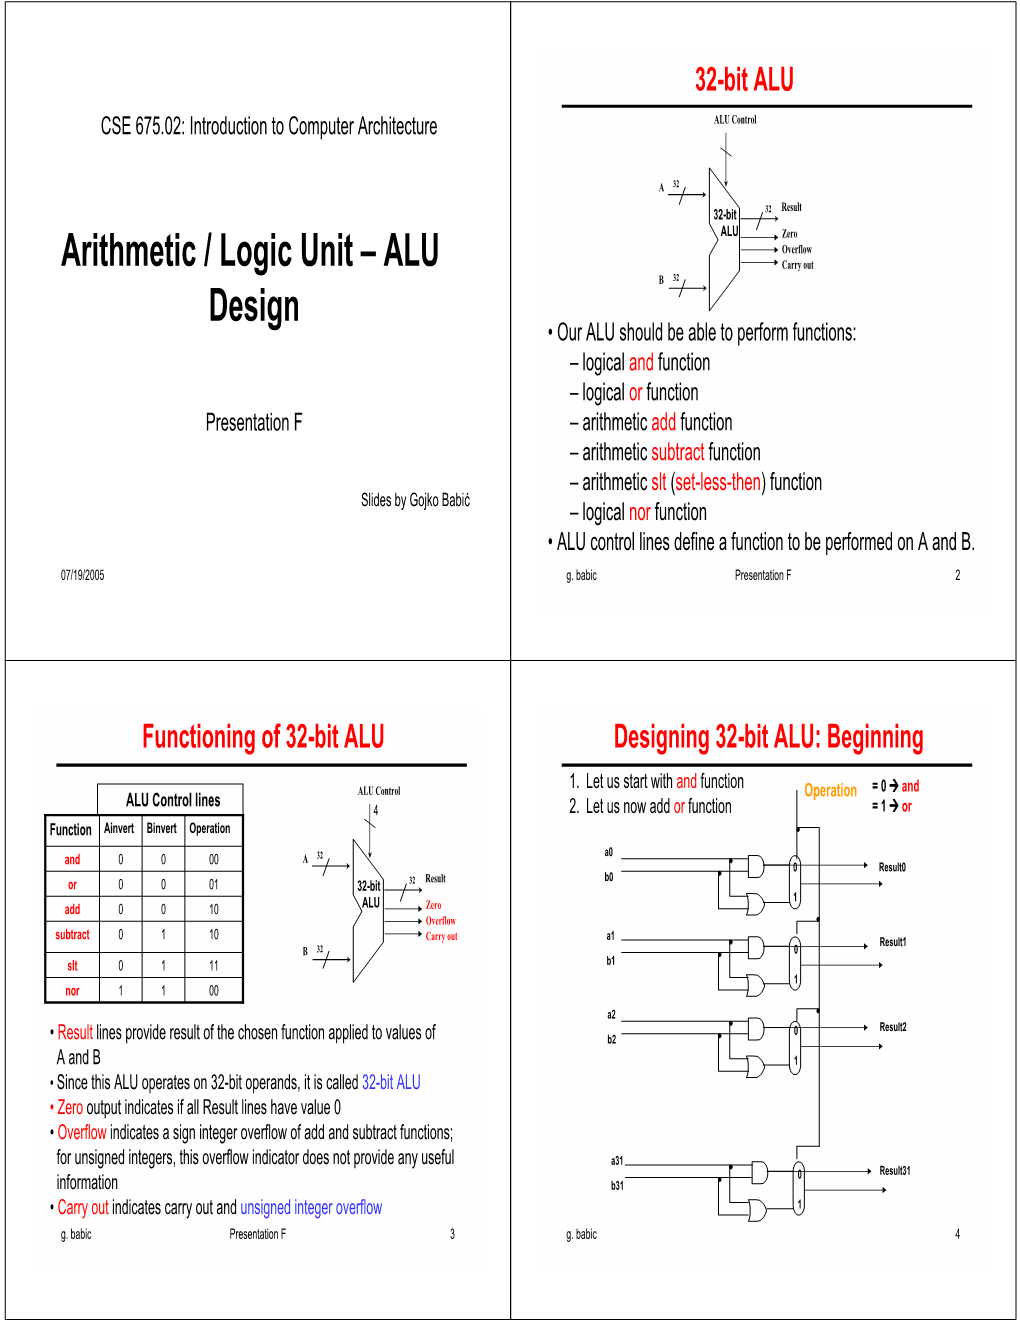 Arithmetic / Logic Unit – ALU Design